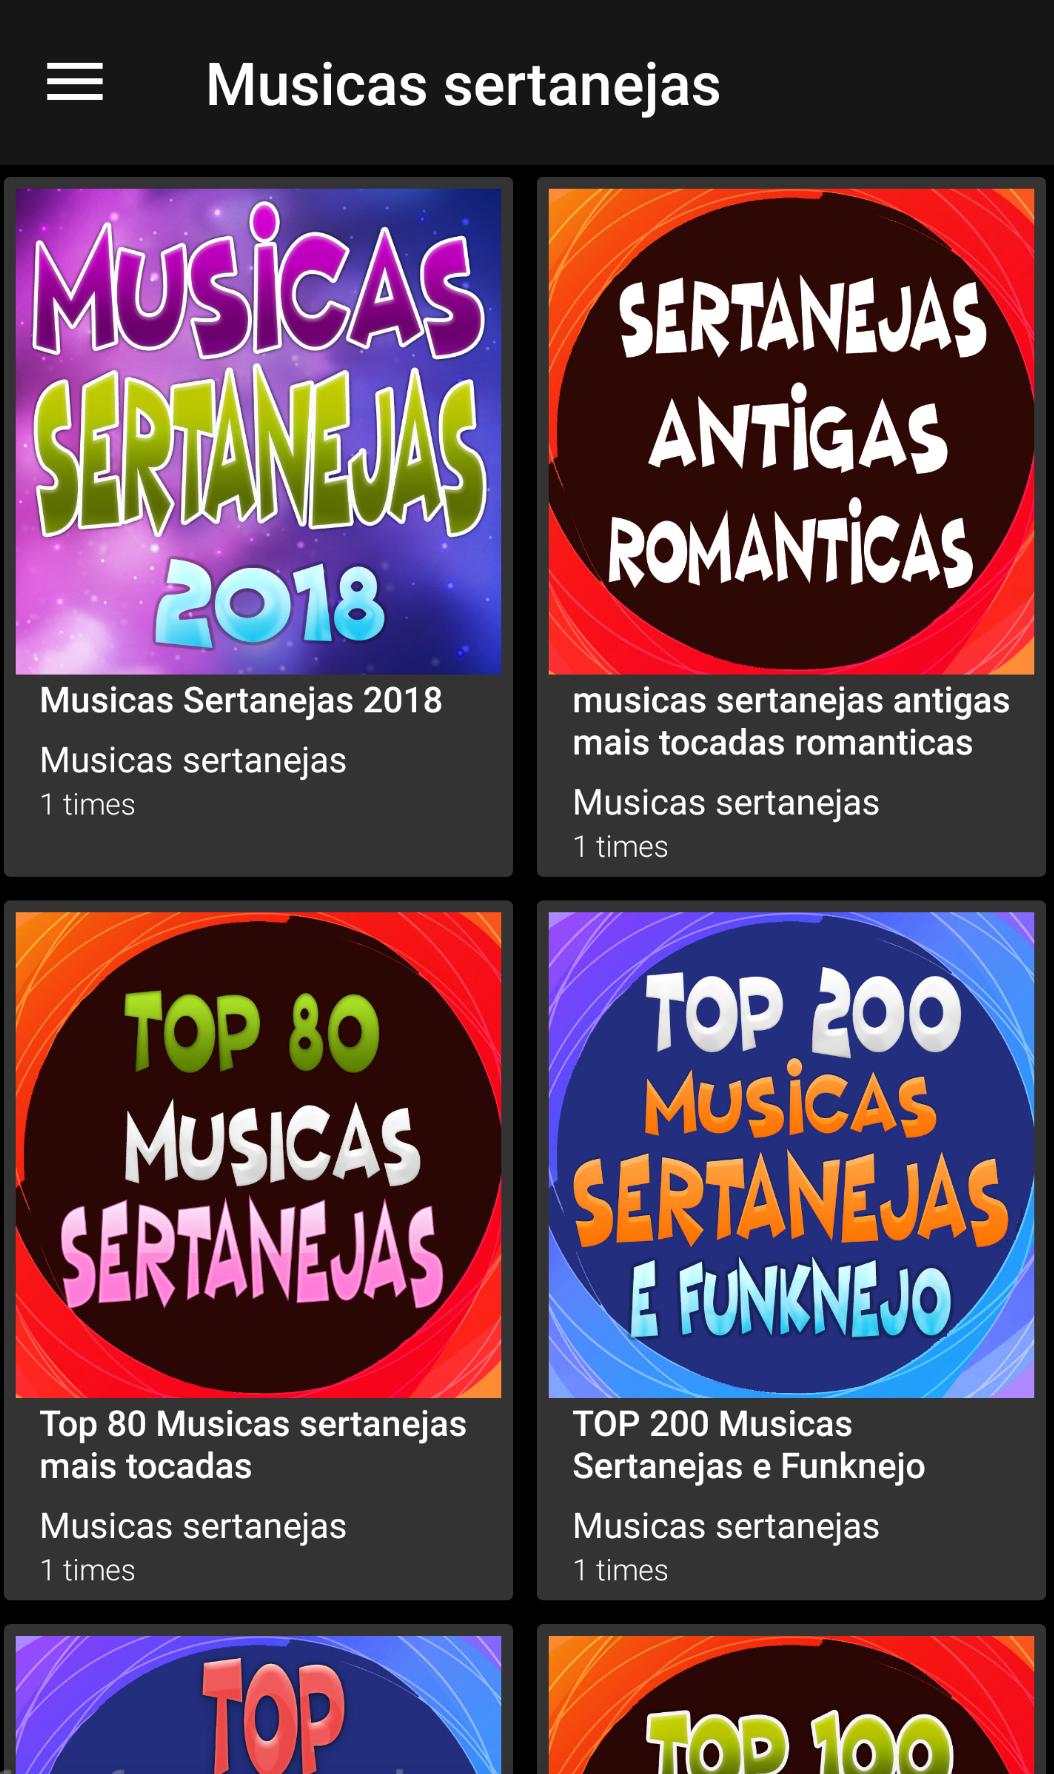 Melhores Musicas Sertanejas 2018 for Android - APK Download